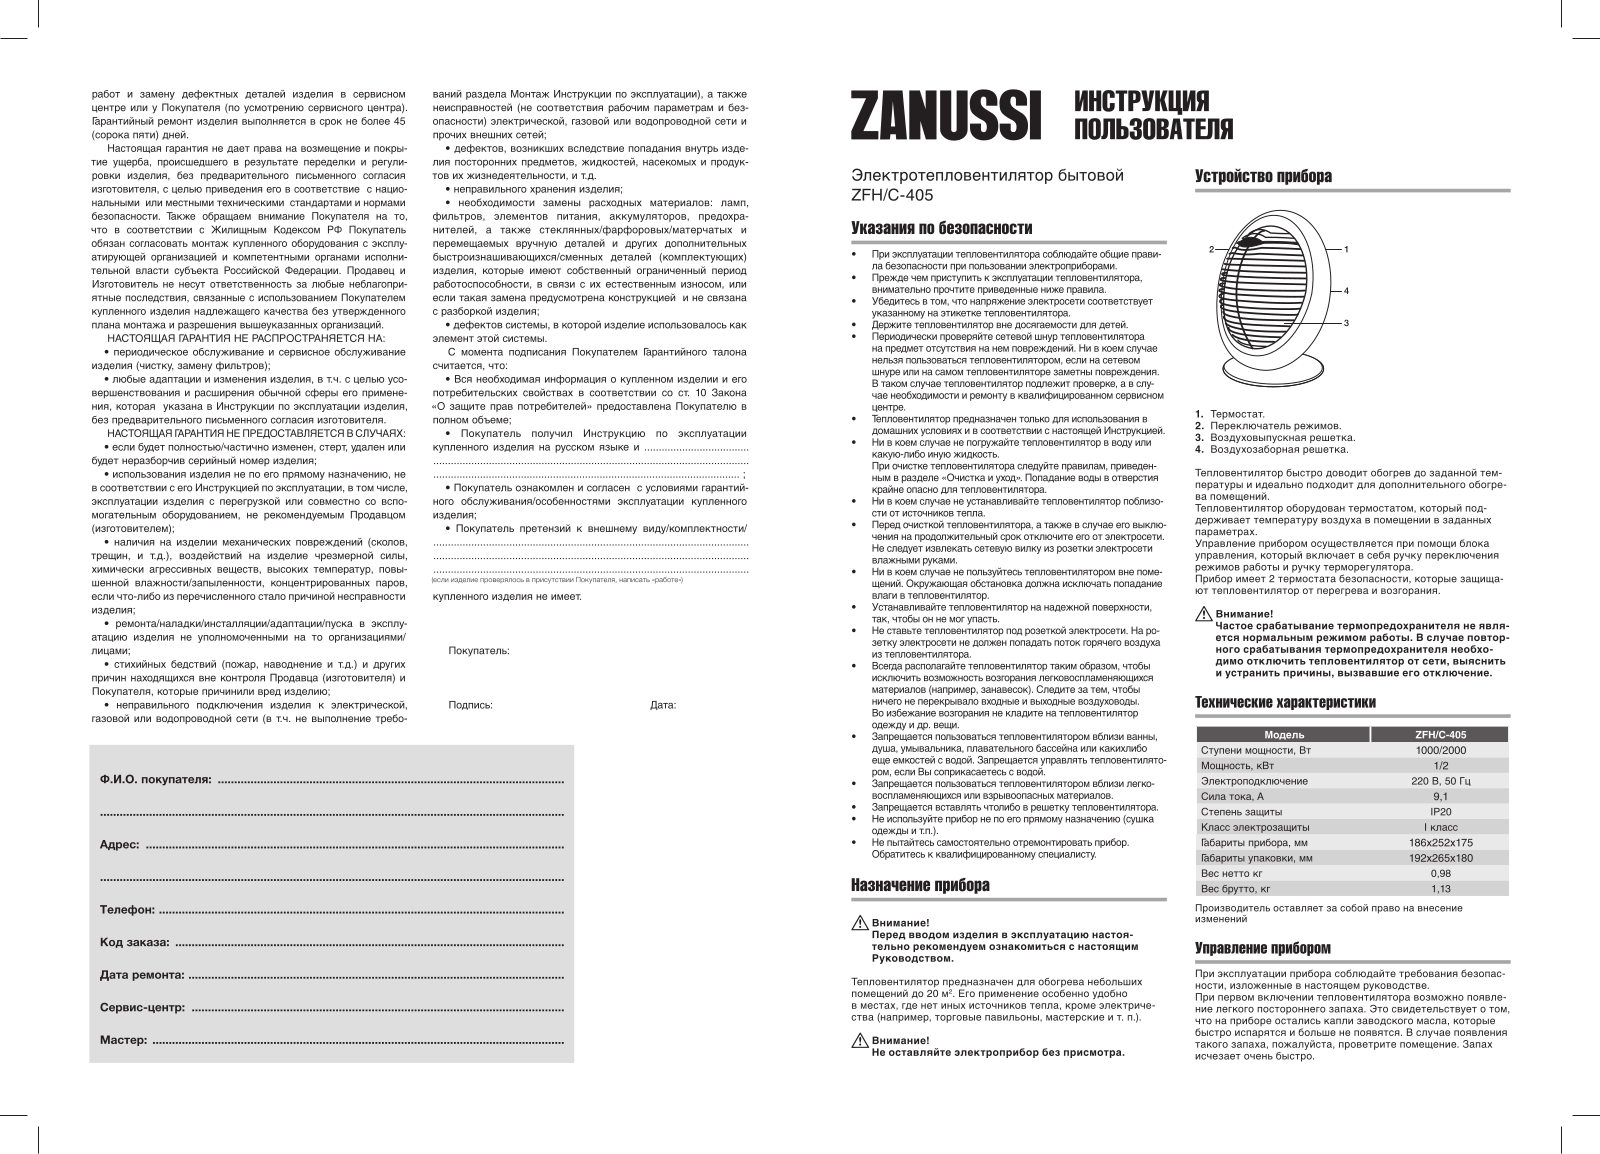 Zanussi ZFH/C-405 User manual